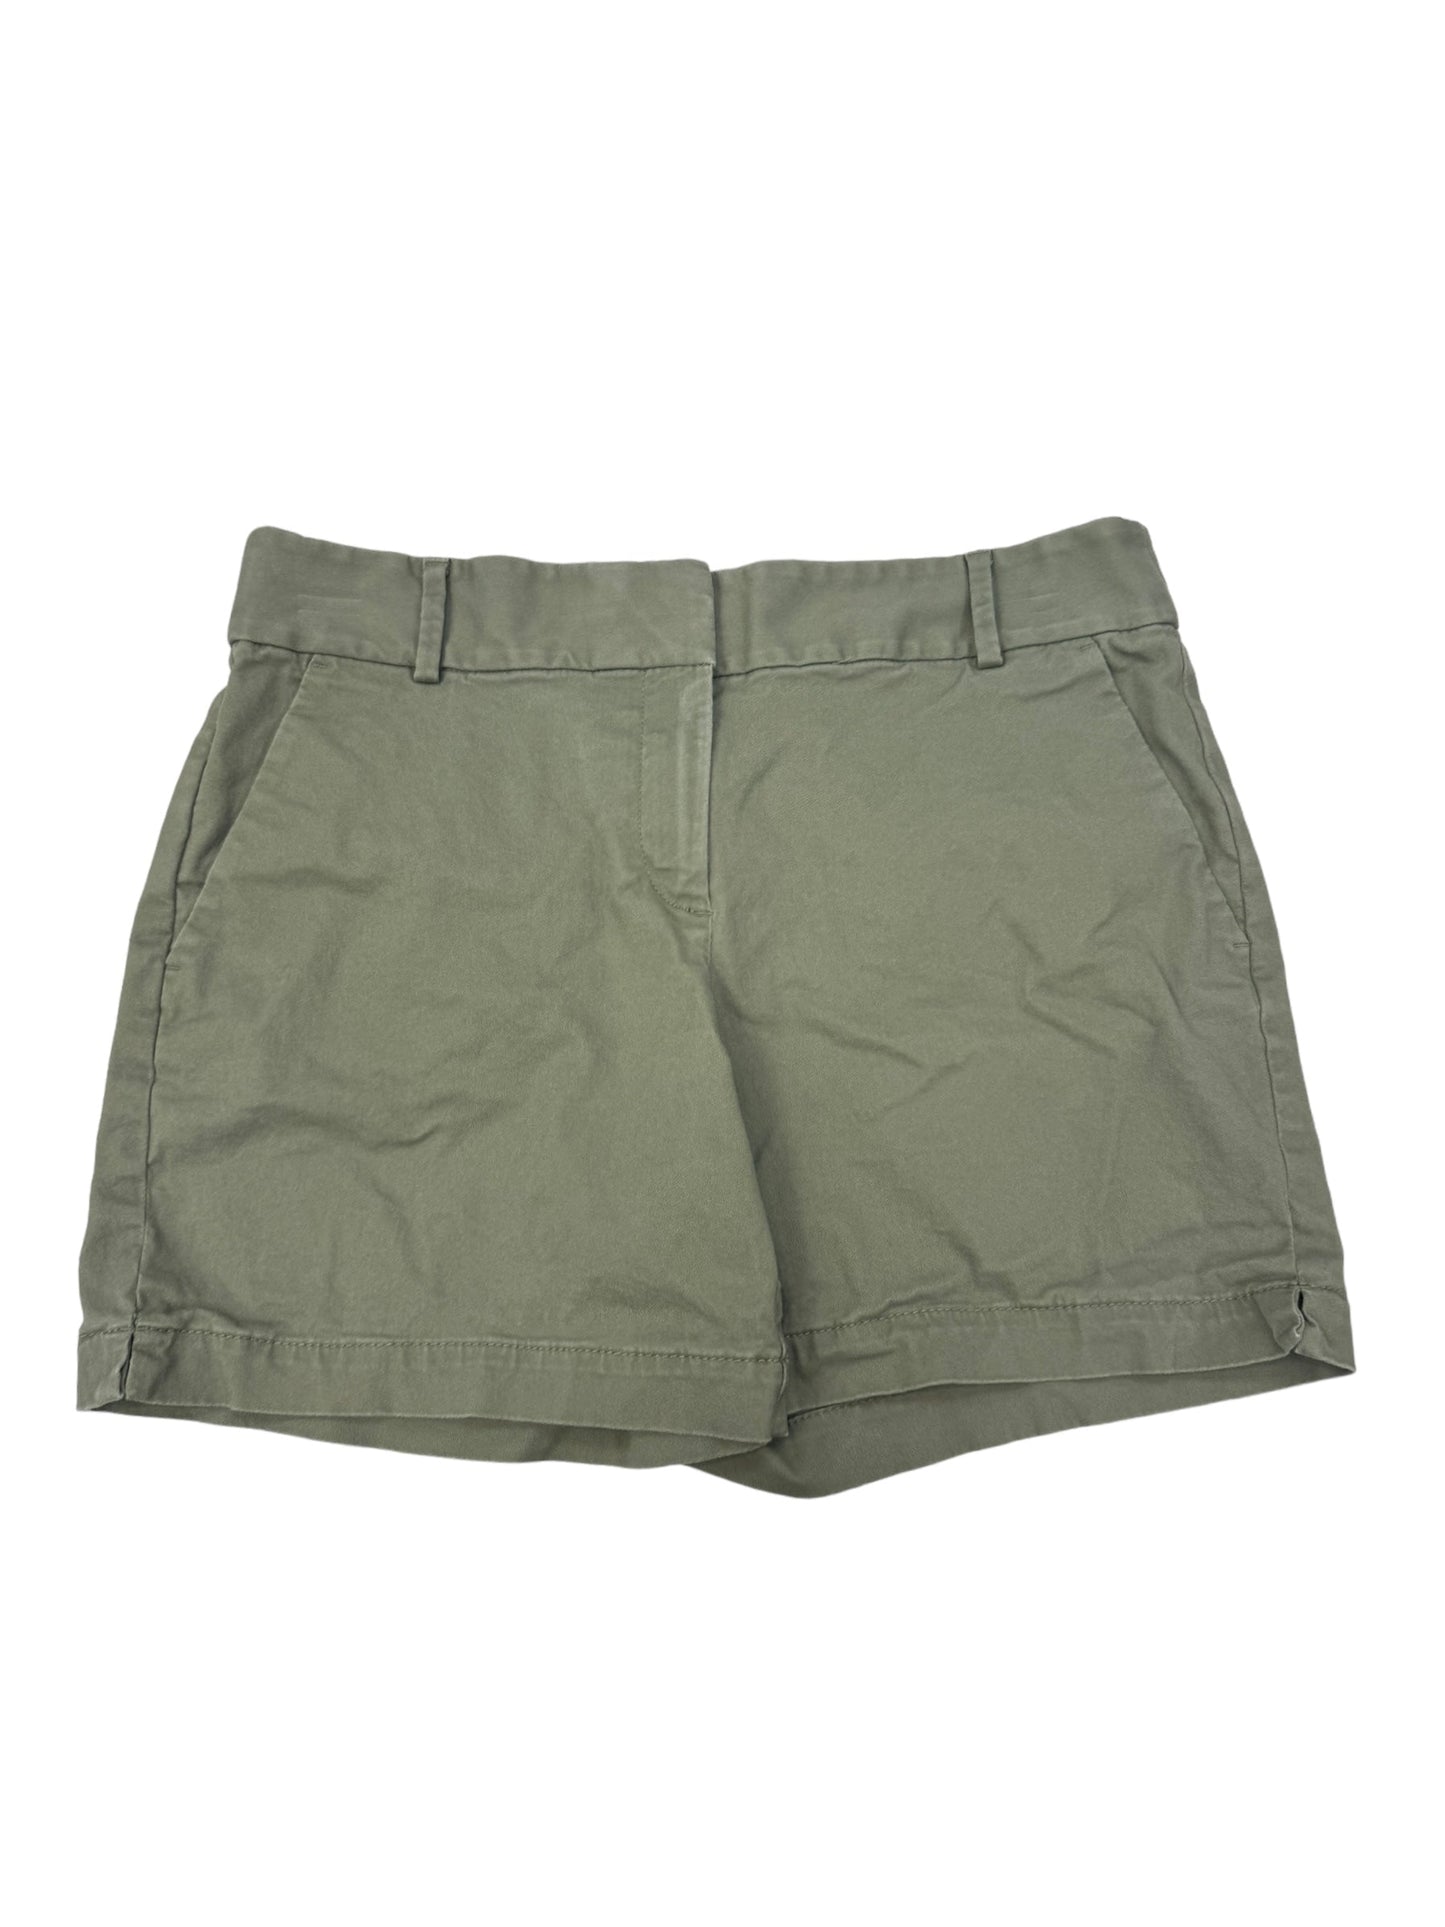 Green Shorts Loft, Size 8